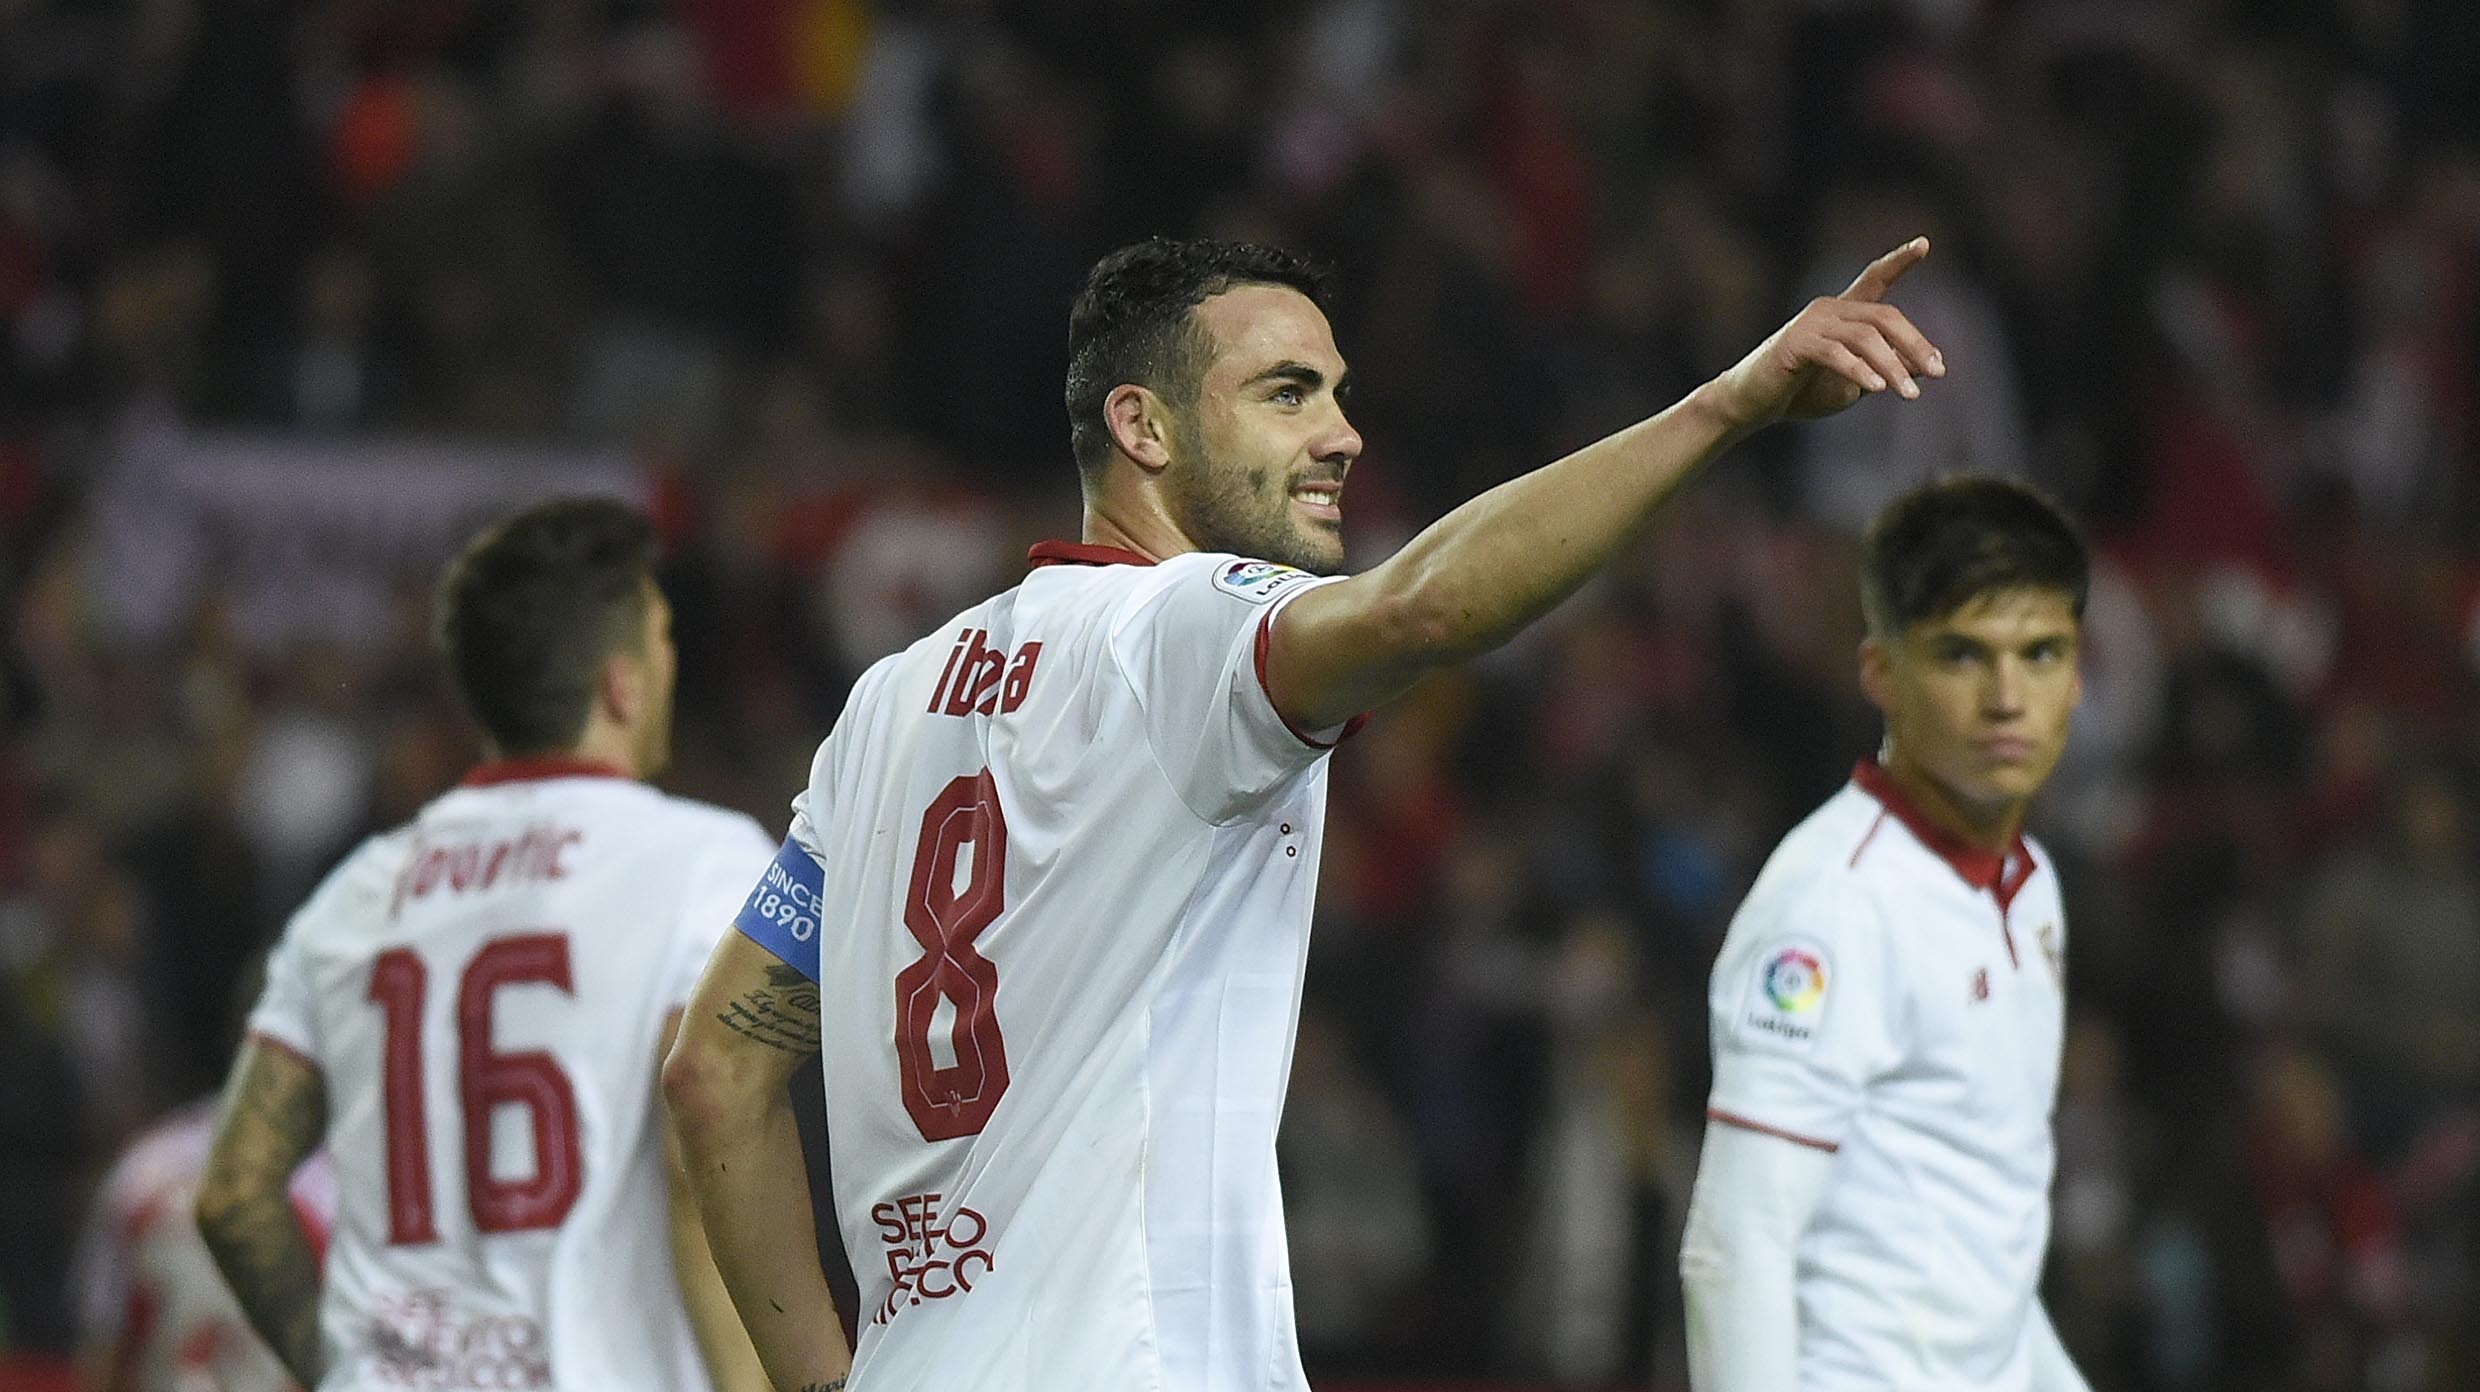 Vicente Iborra celebrates a goal during the 16/17 season